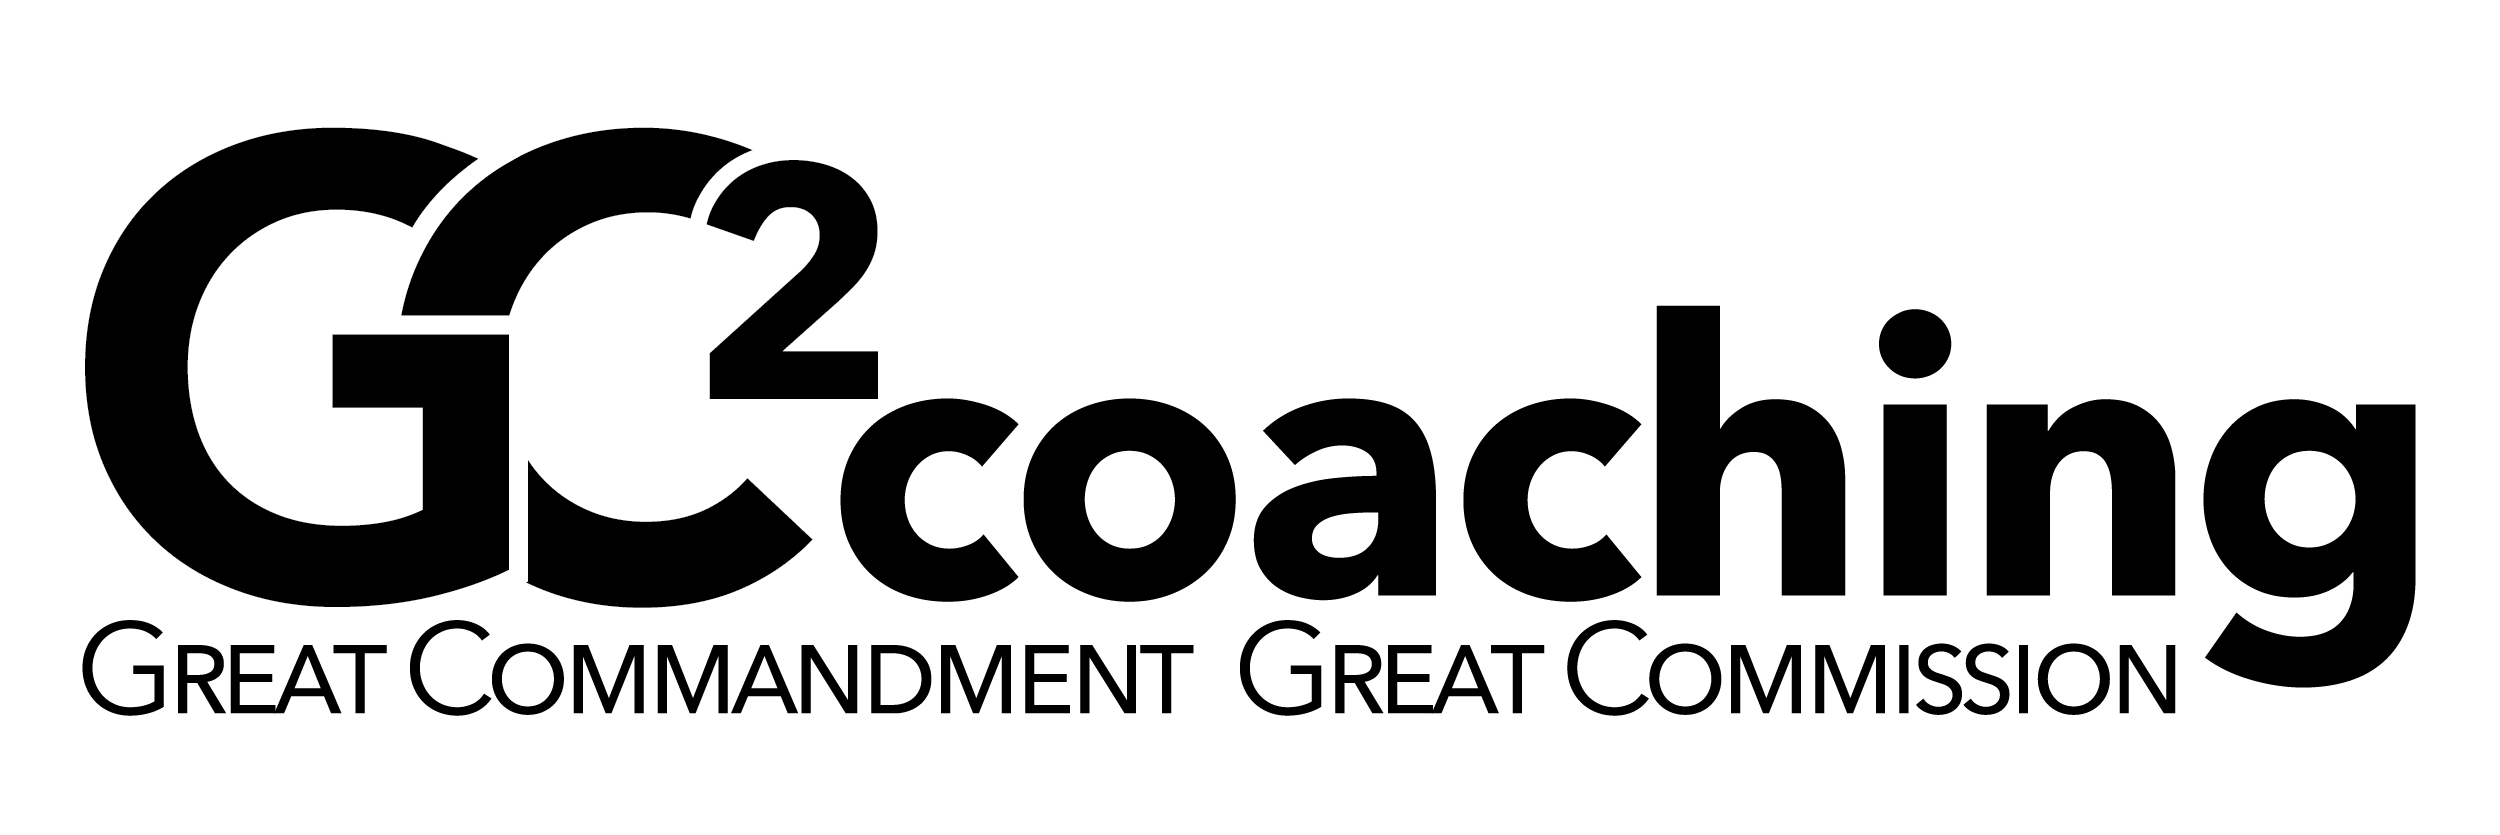 gc2 logo